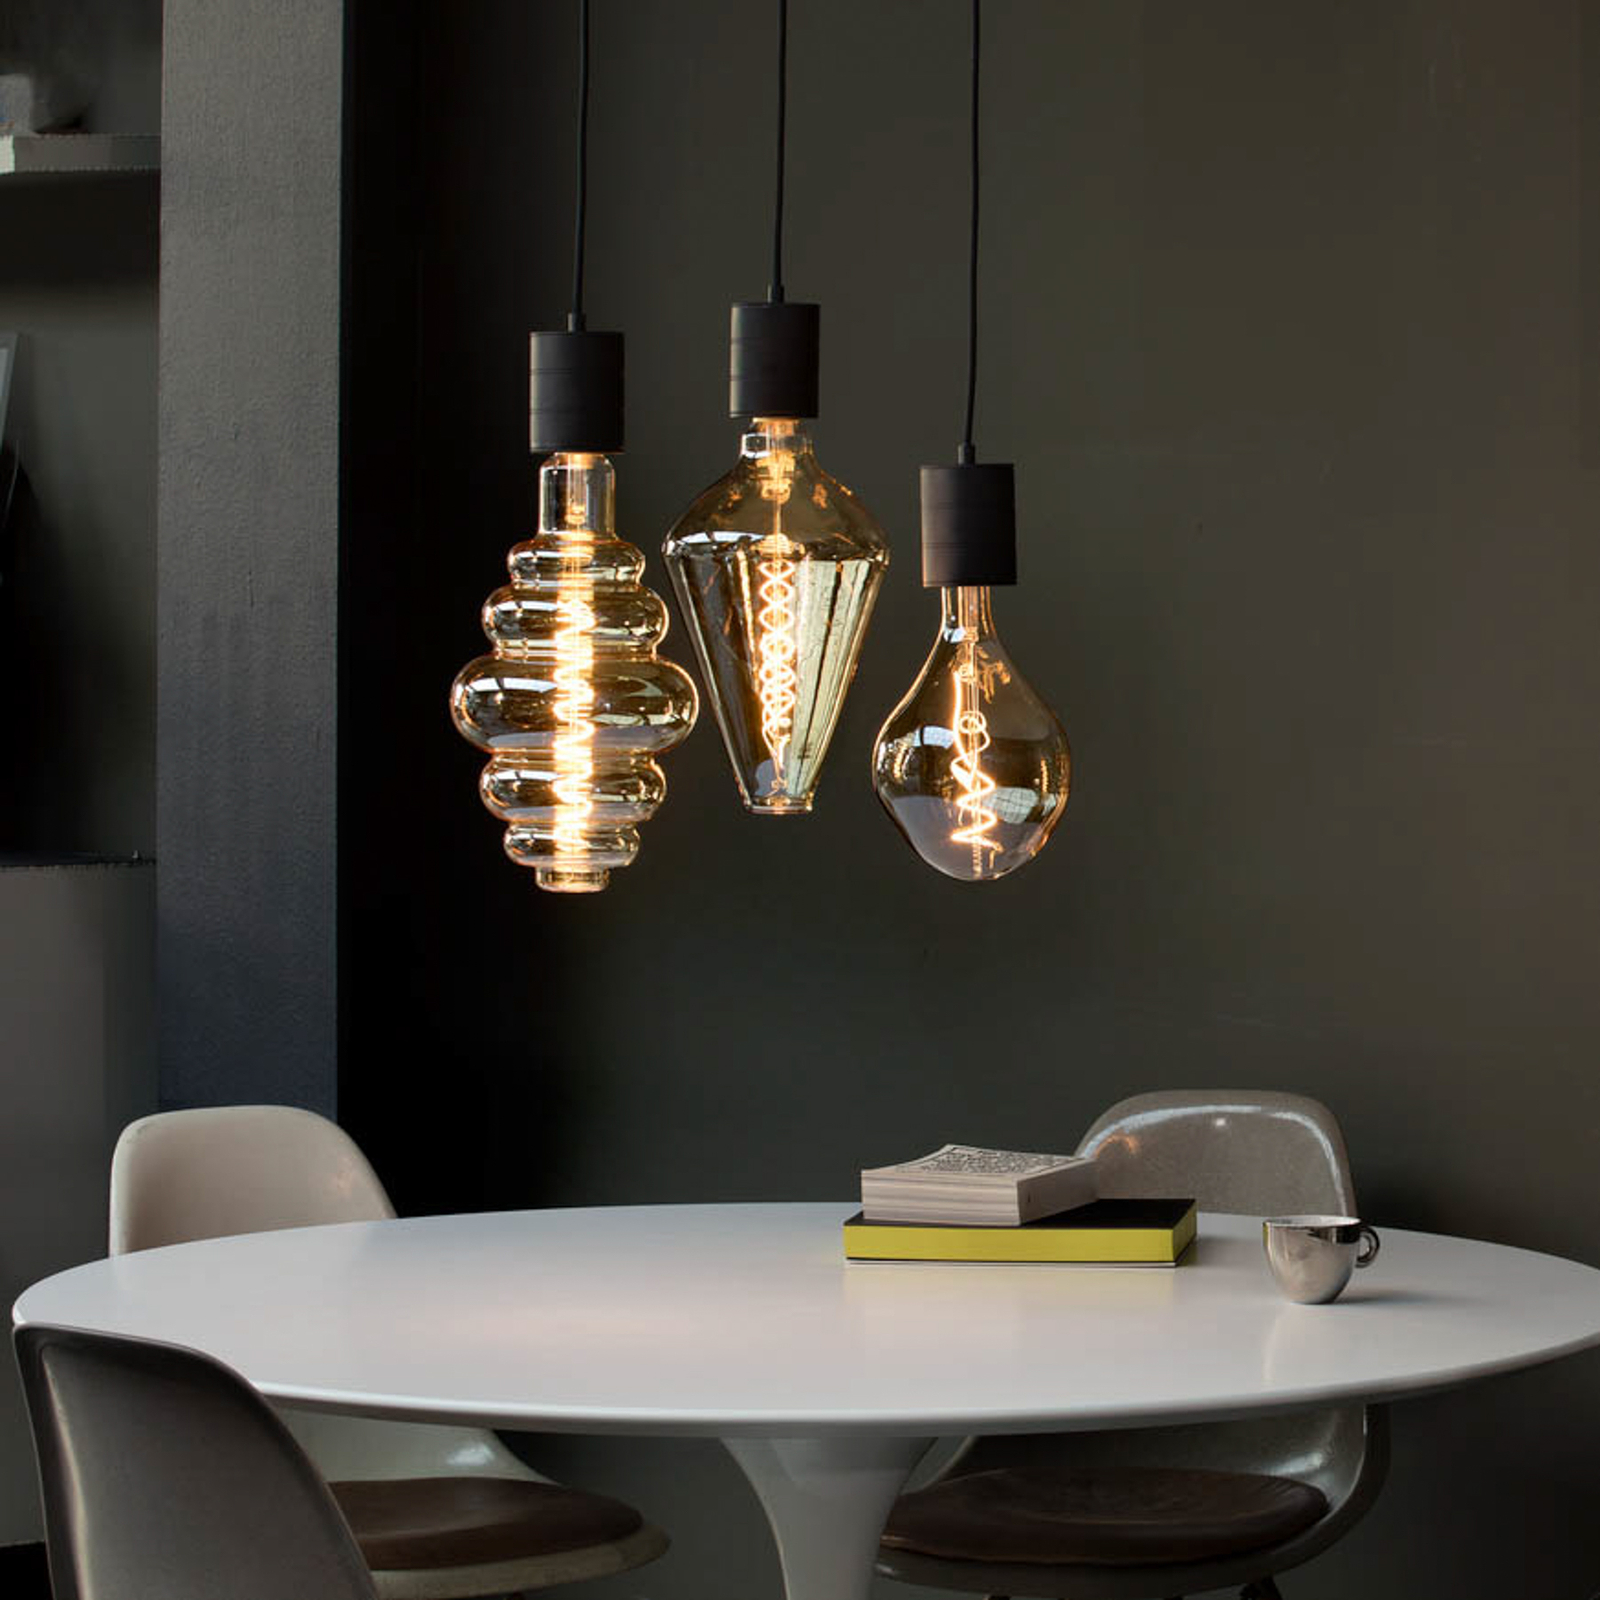 Calex Vienna LED-Lampe E27 6W dim 2.200 K gold